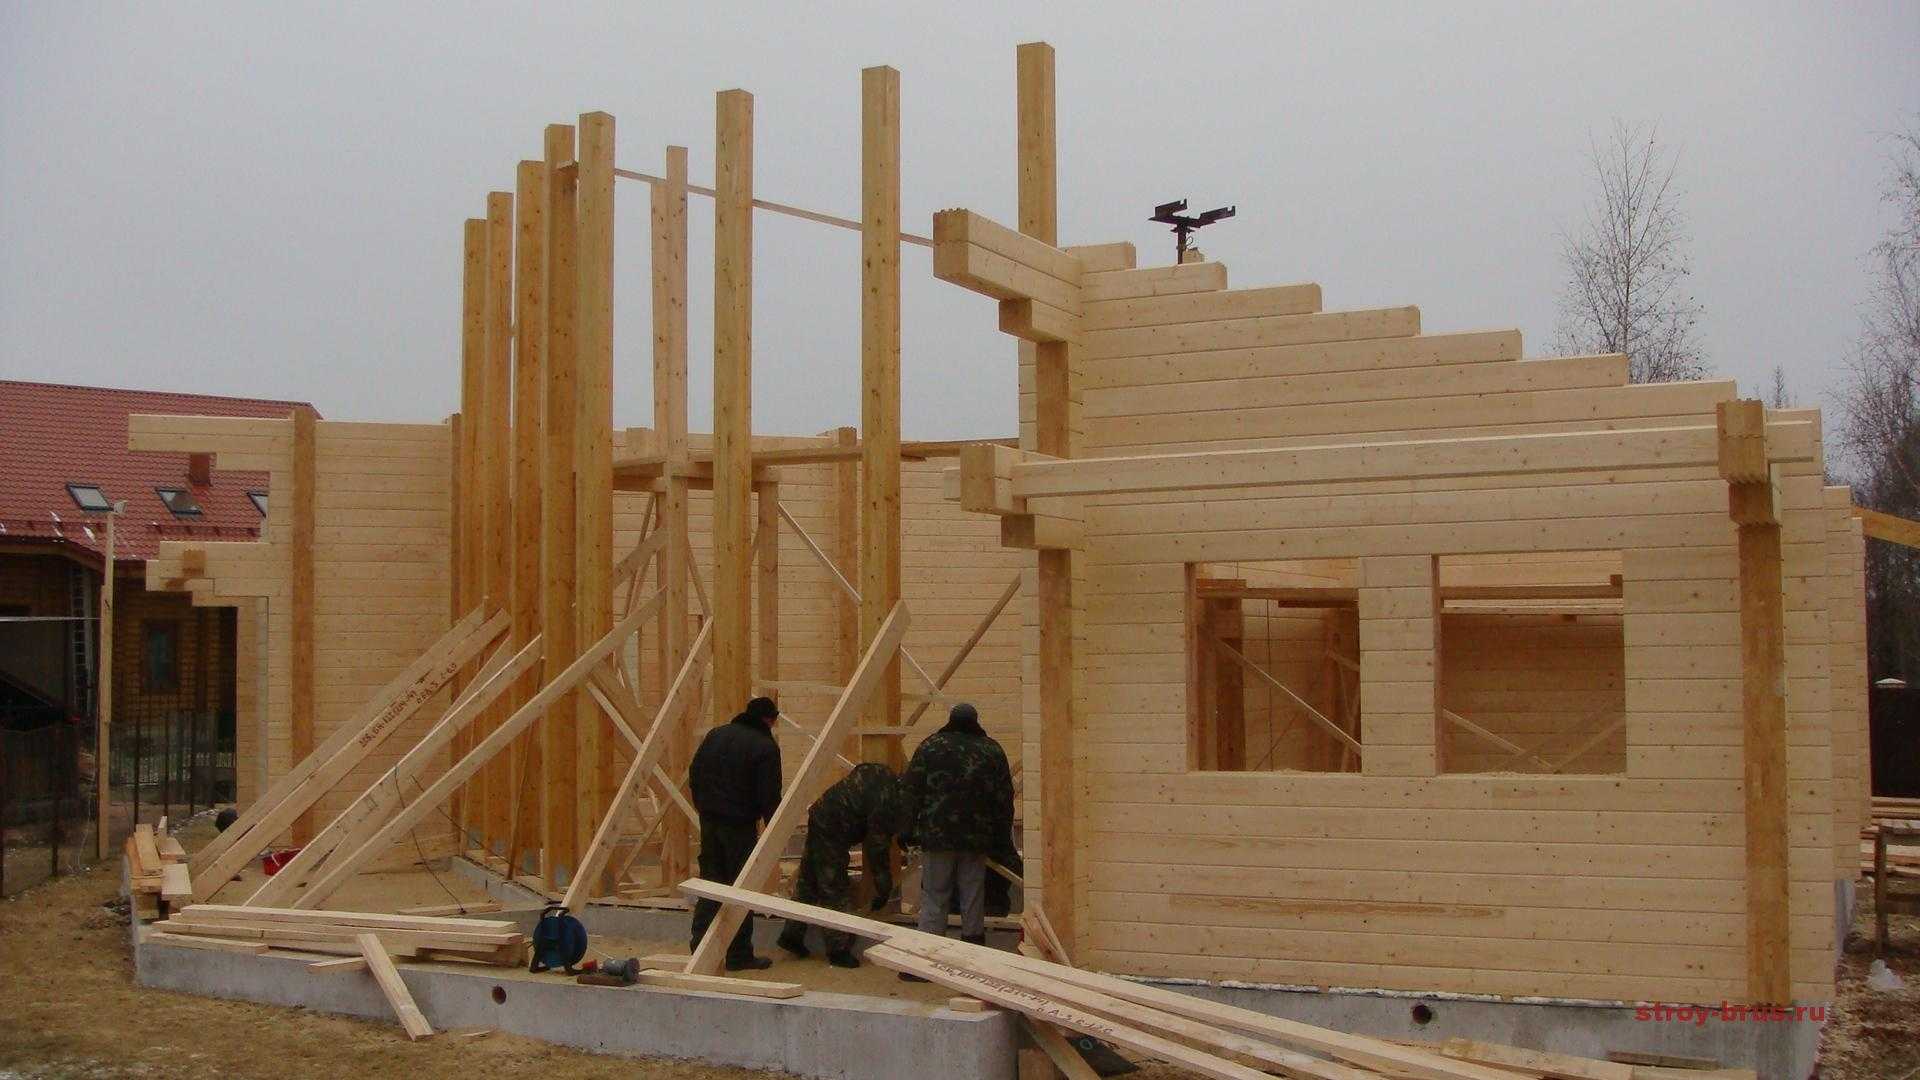 Как правильно построить дом из бруса?